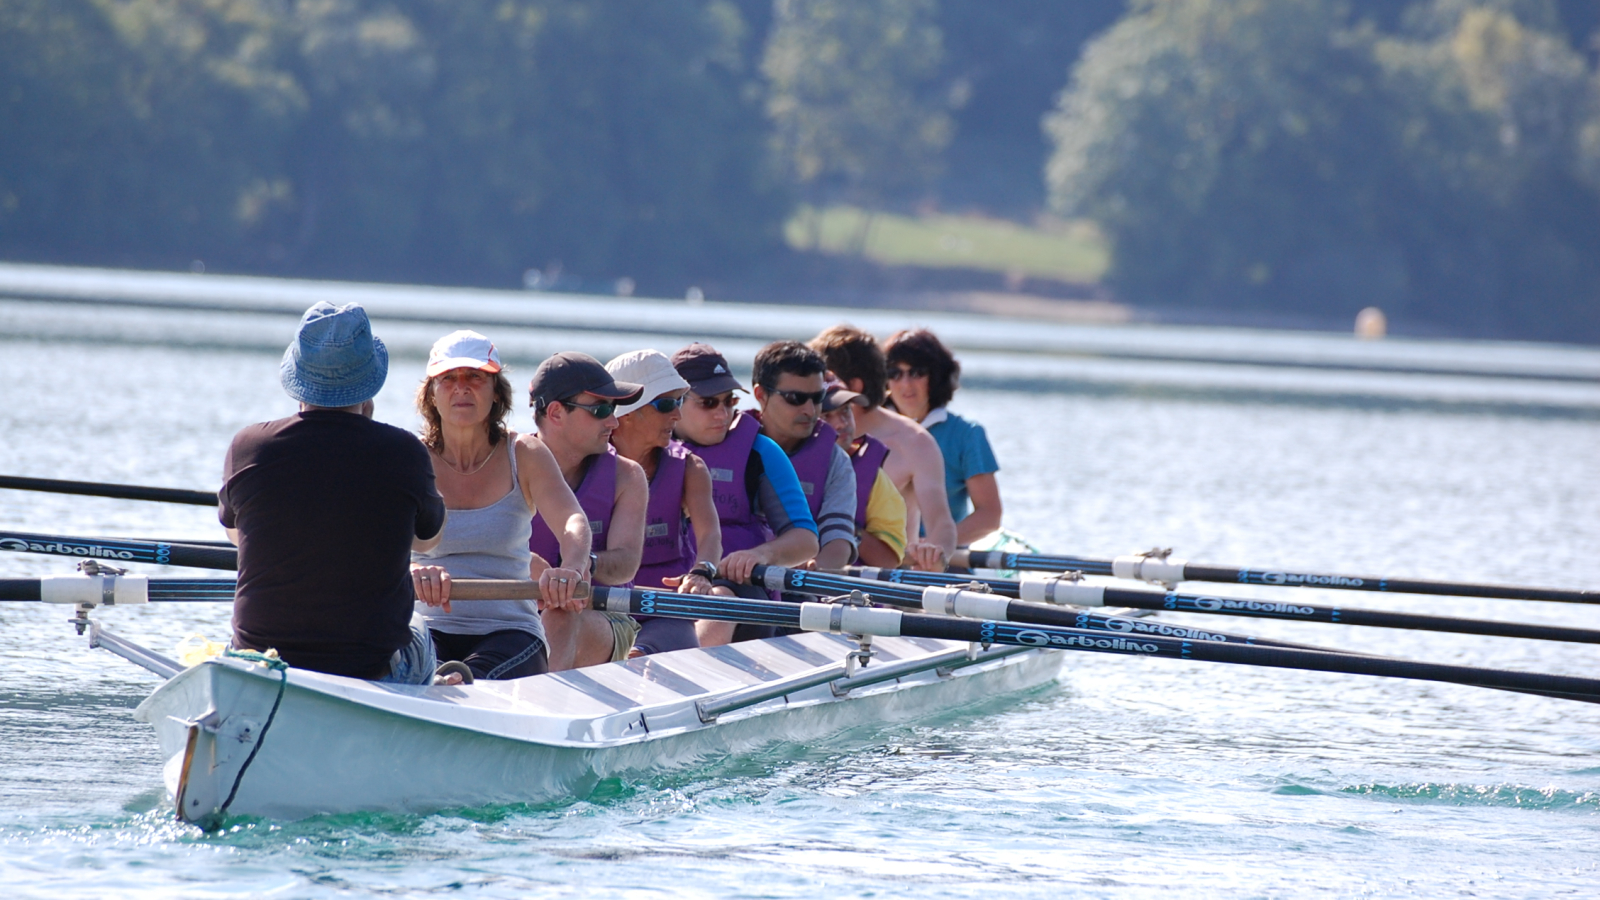 Sur les eaux cristallines du lac, une équipe de huit personnes rame sur un grand aviron, guidés par une personne qui leur donne le rythme. Au second plan, des arbres bordent les rives du lac.